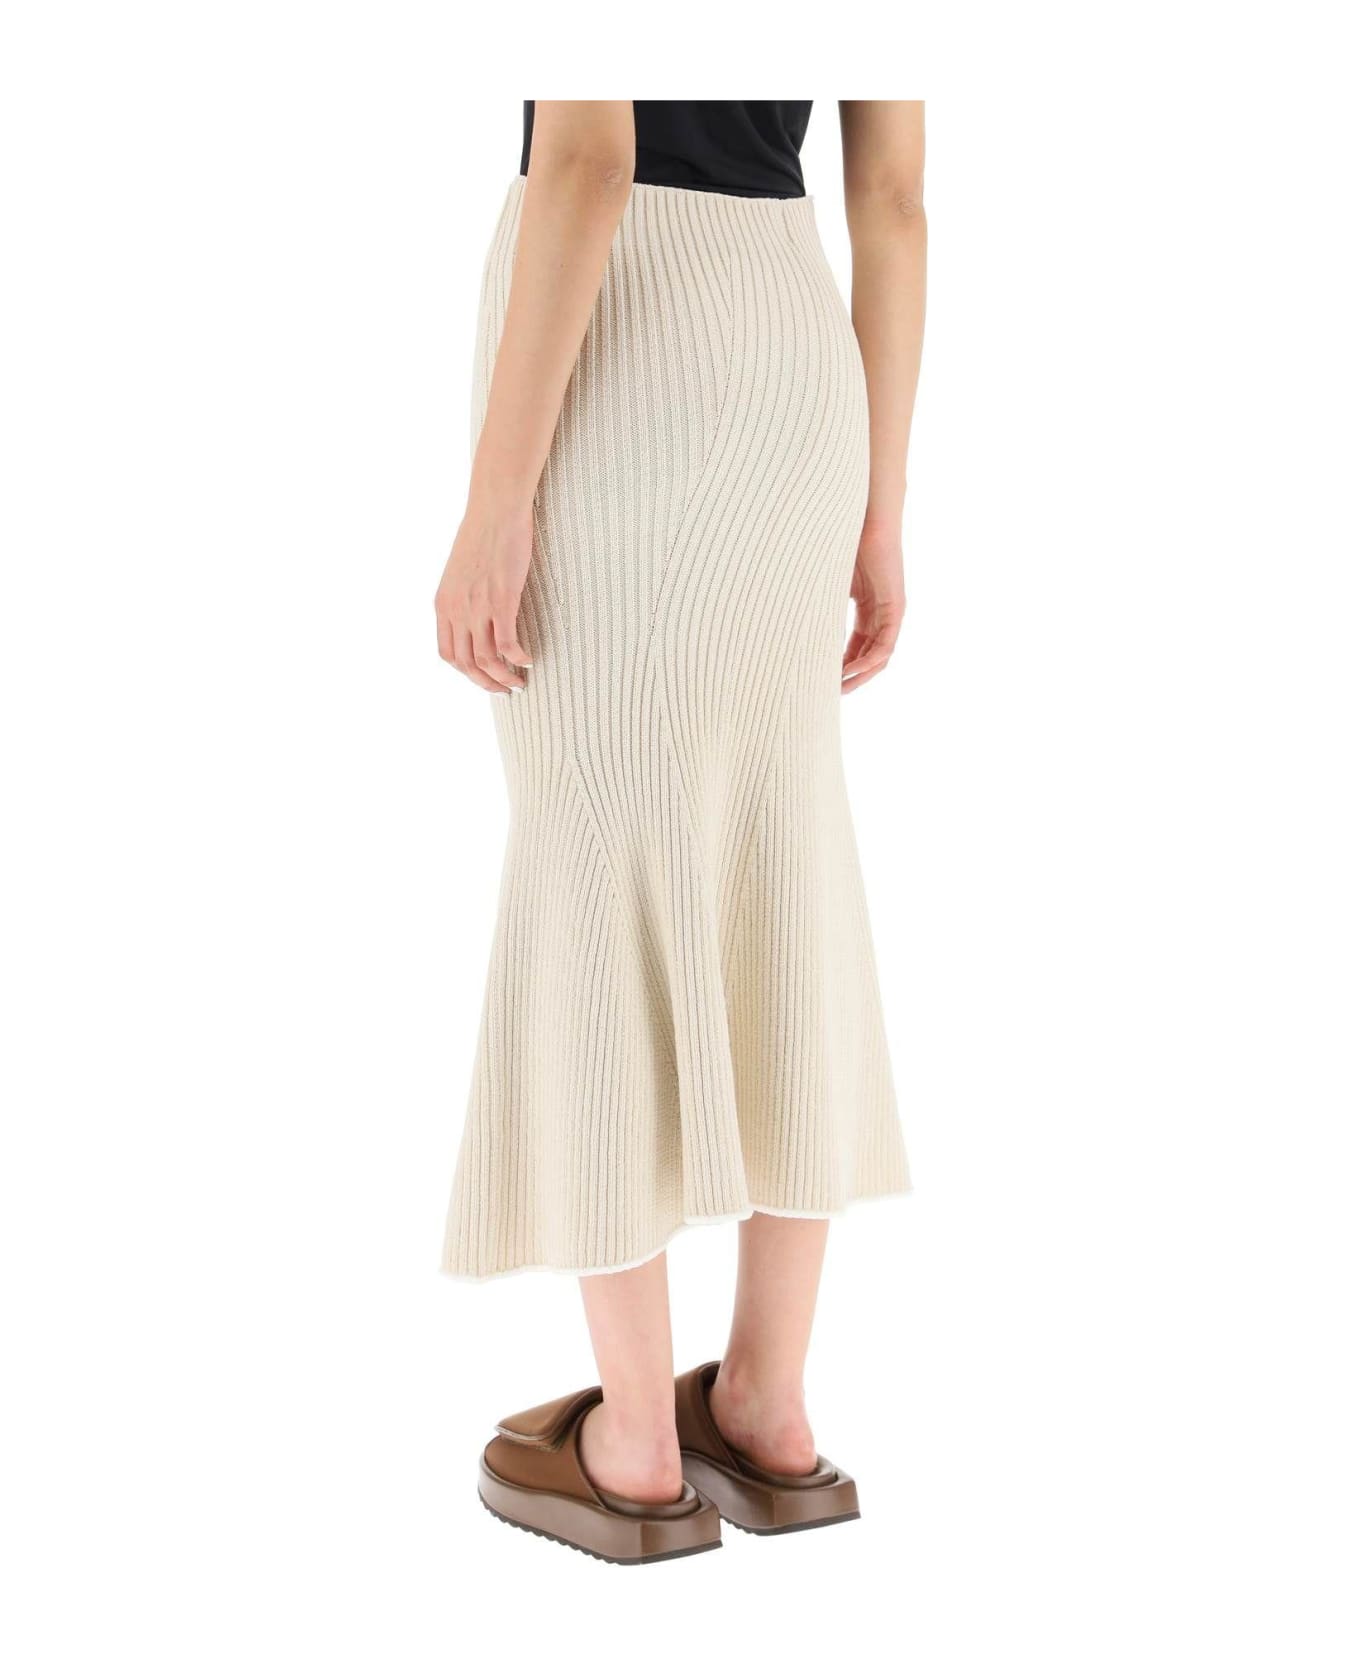 Moncler Knit Midi Skirt - Beige